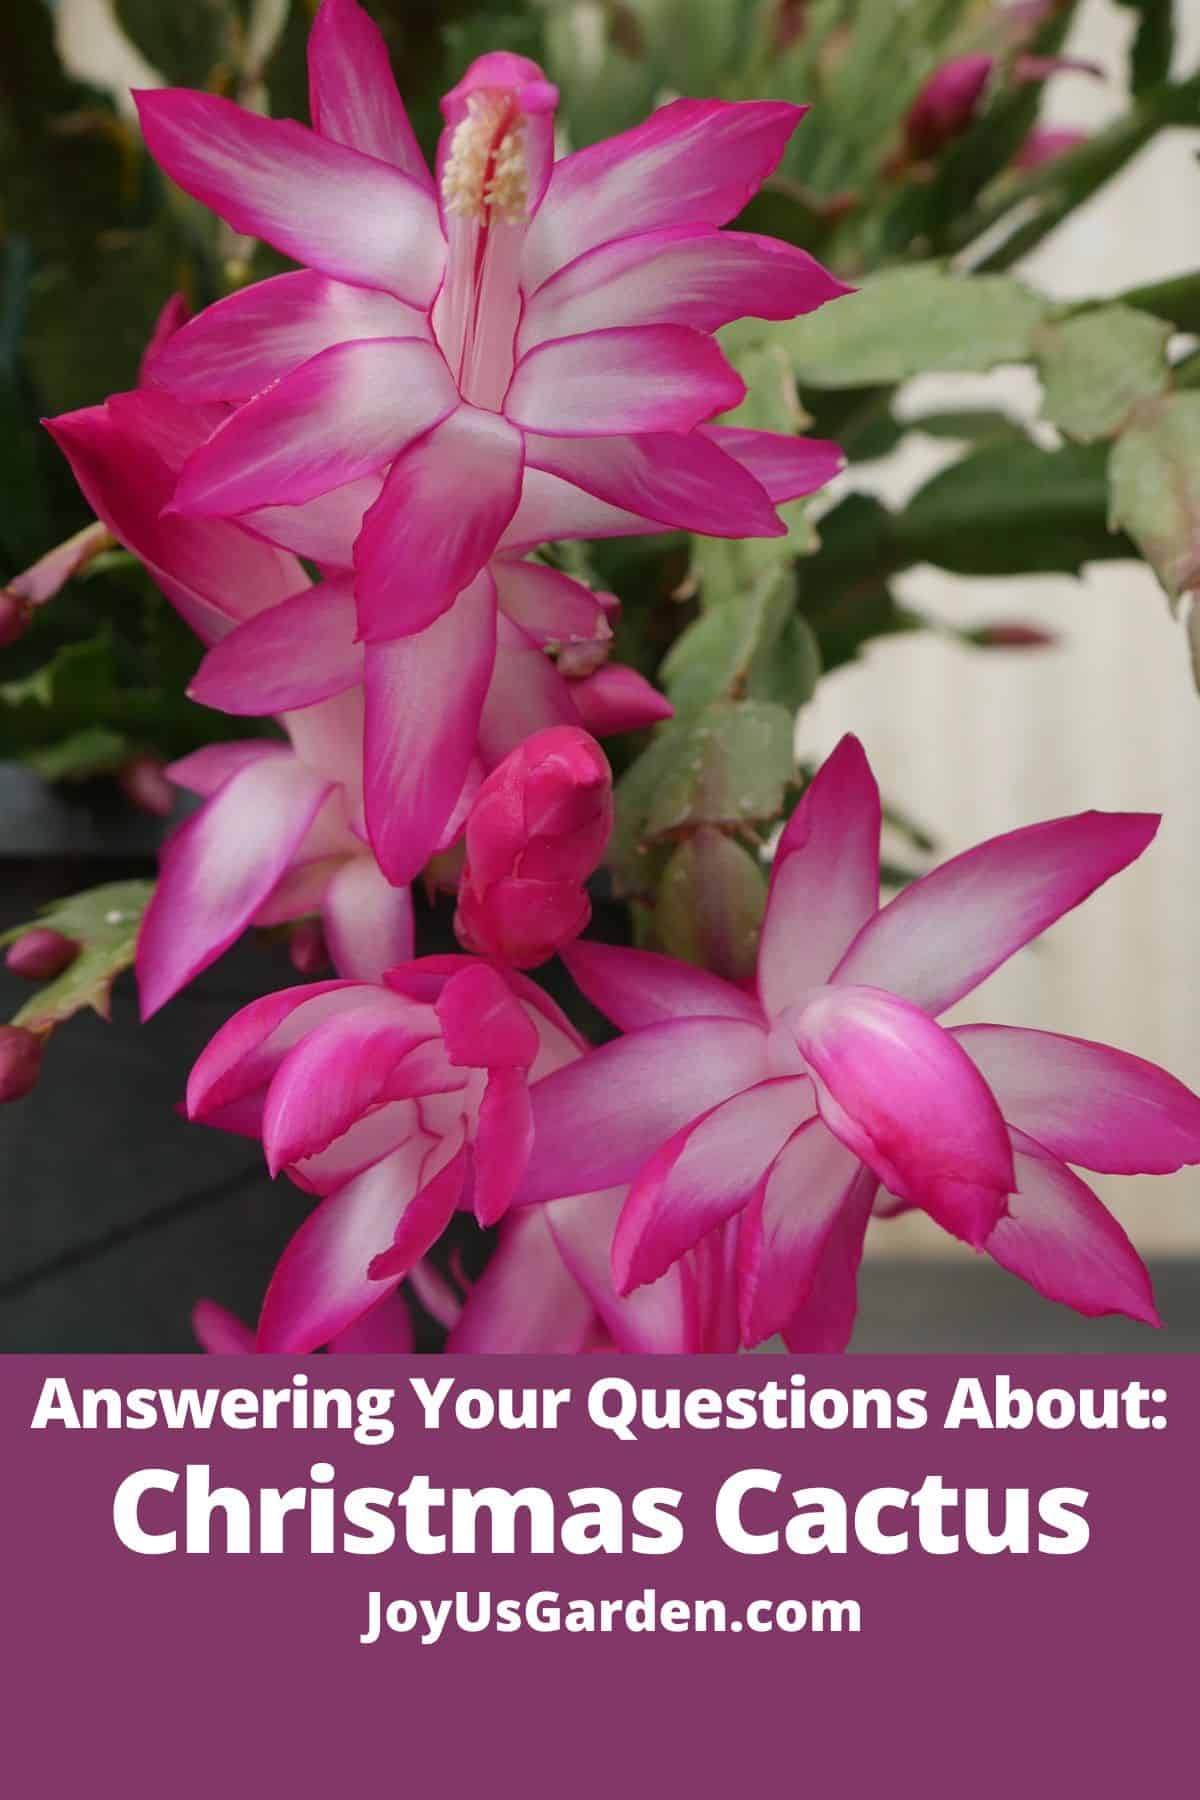  Risposte alle vostre domande sulle piante di cactus natalizio